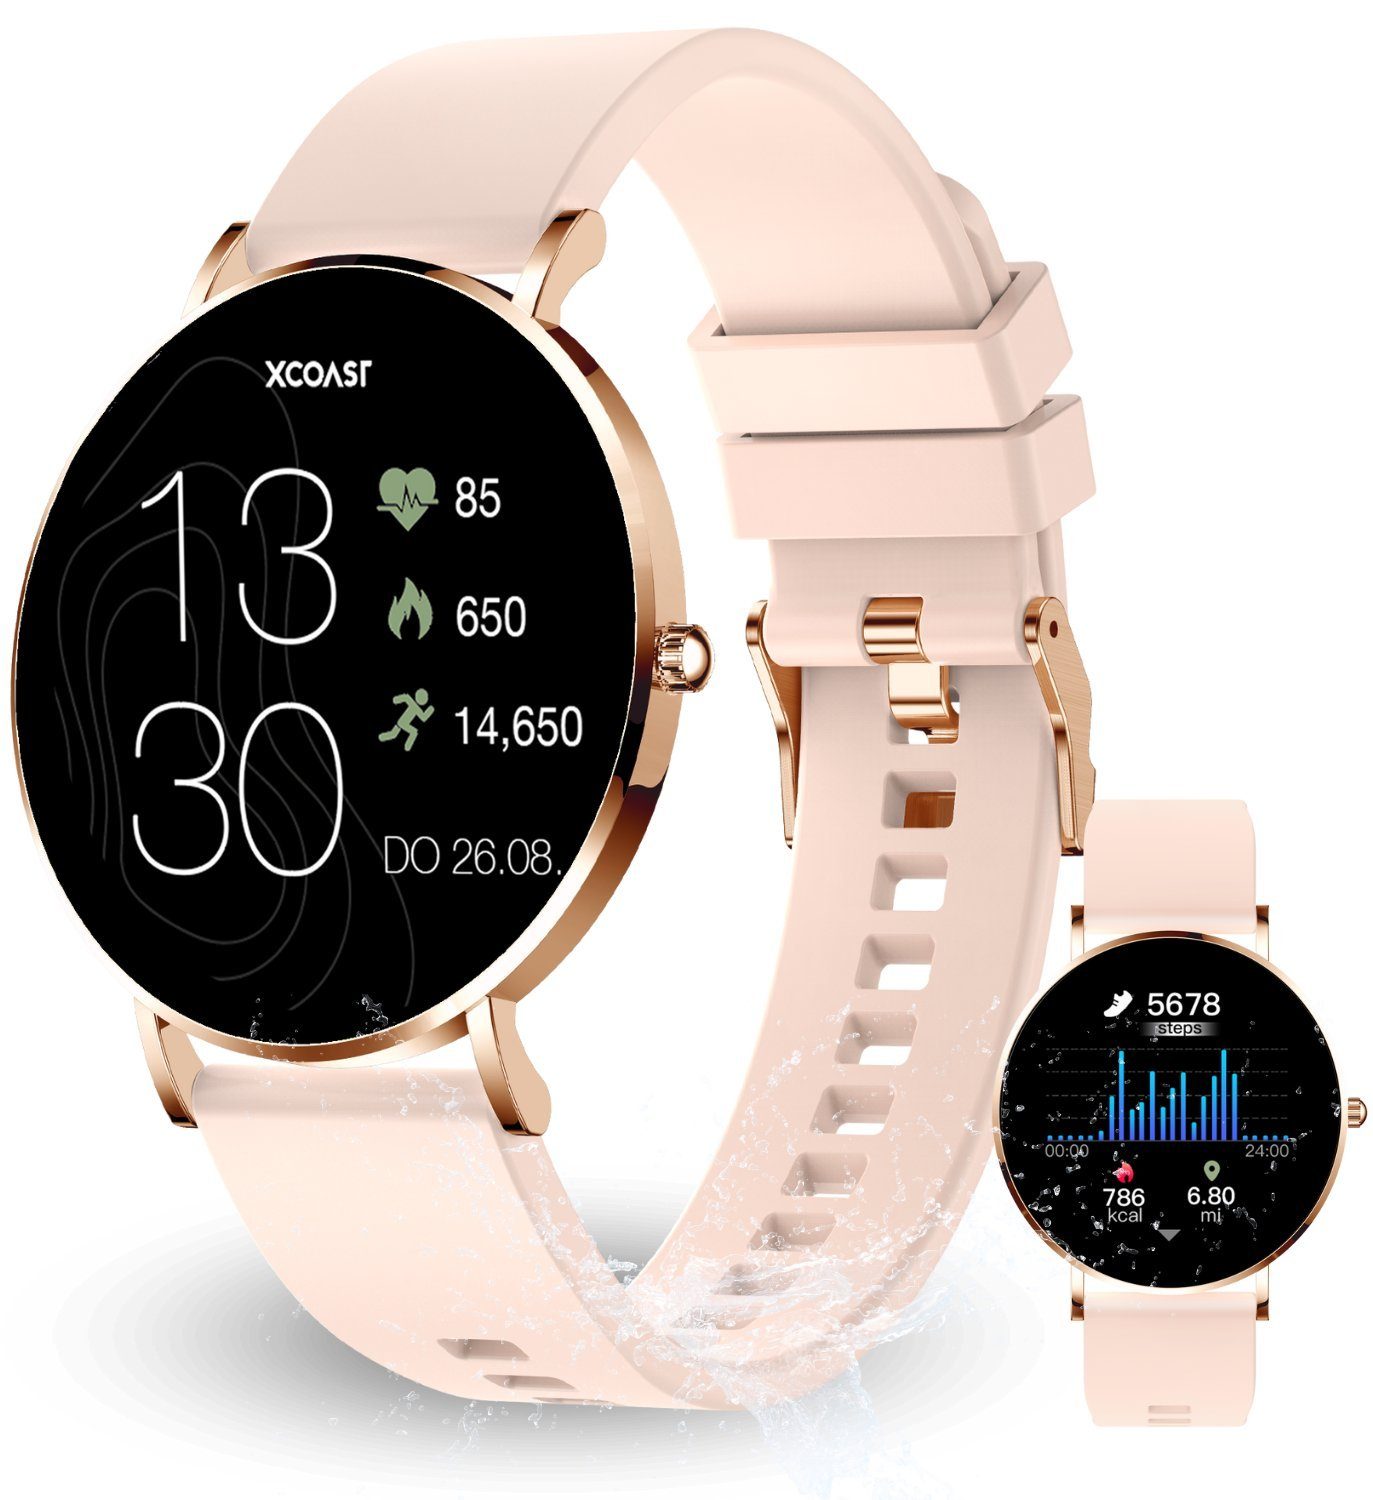 XCOAST SIONA 2 Damen Smartwatch (4,2 cm/1,3 Zoll, iOS Android) ROSE GOLD, Damen Fitness Tracker, neueste Generation, Blutsauerstoffmesser, Wasserdicht, Ultra flach, Puls, Blutdruck, brillante Farben, AMOLED